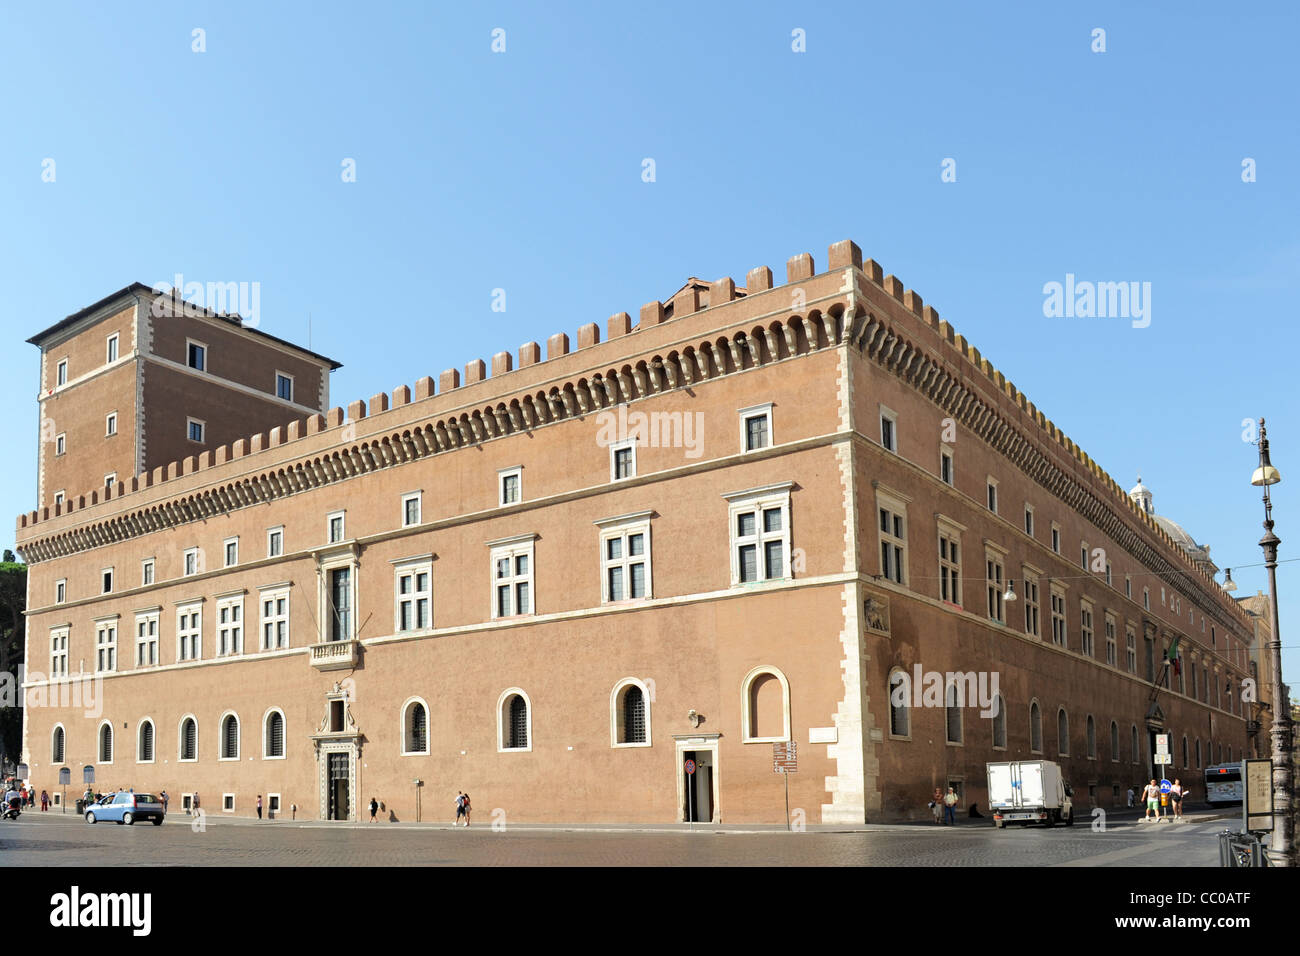 Vue sur la piazza venezia à Rome, Italie Banque D'Images